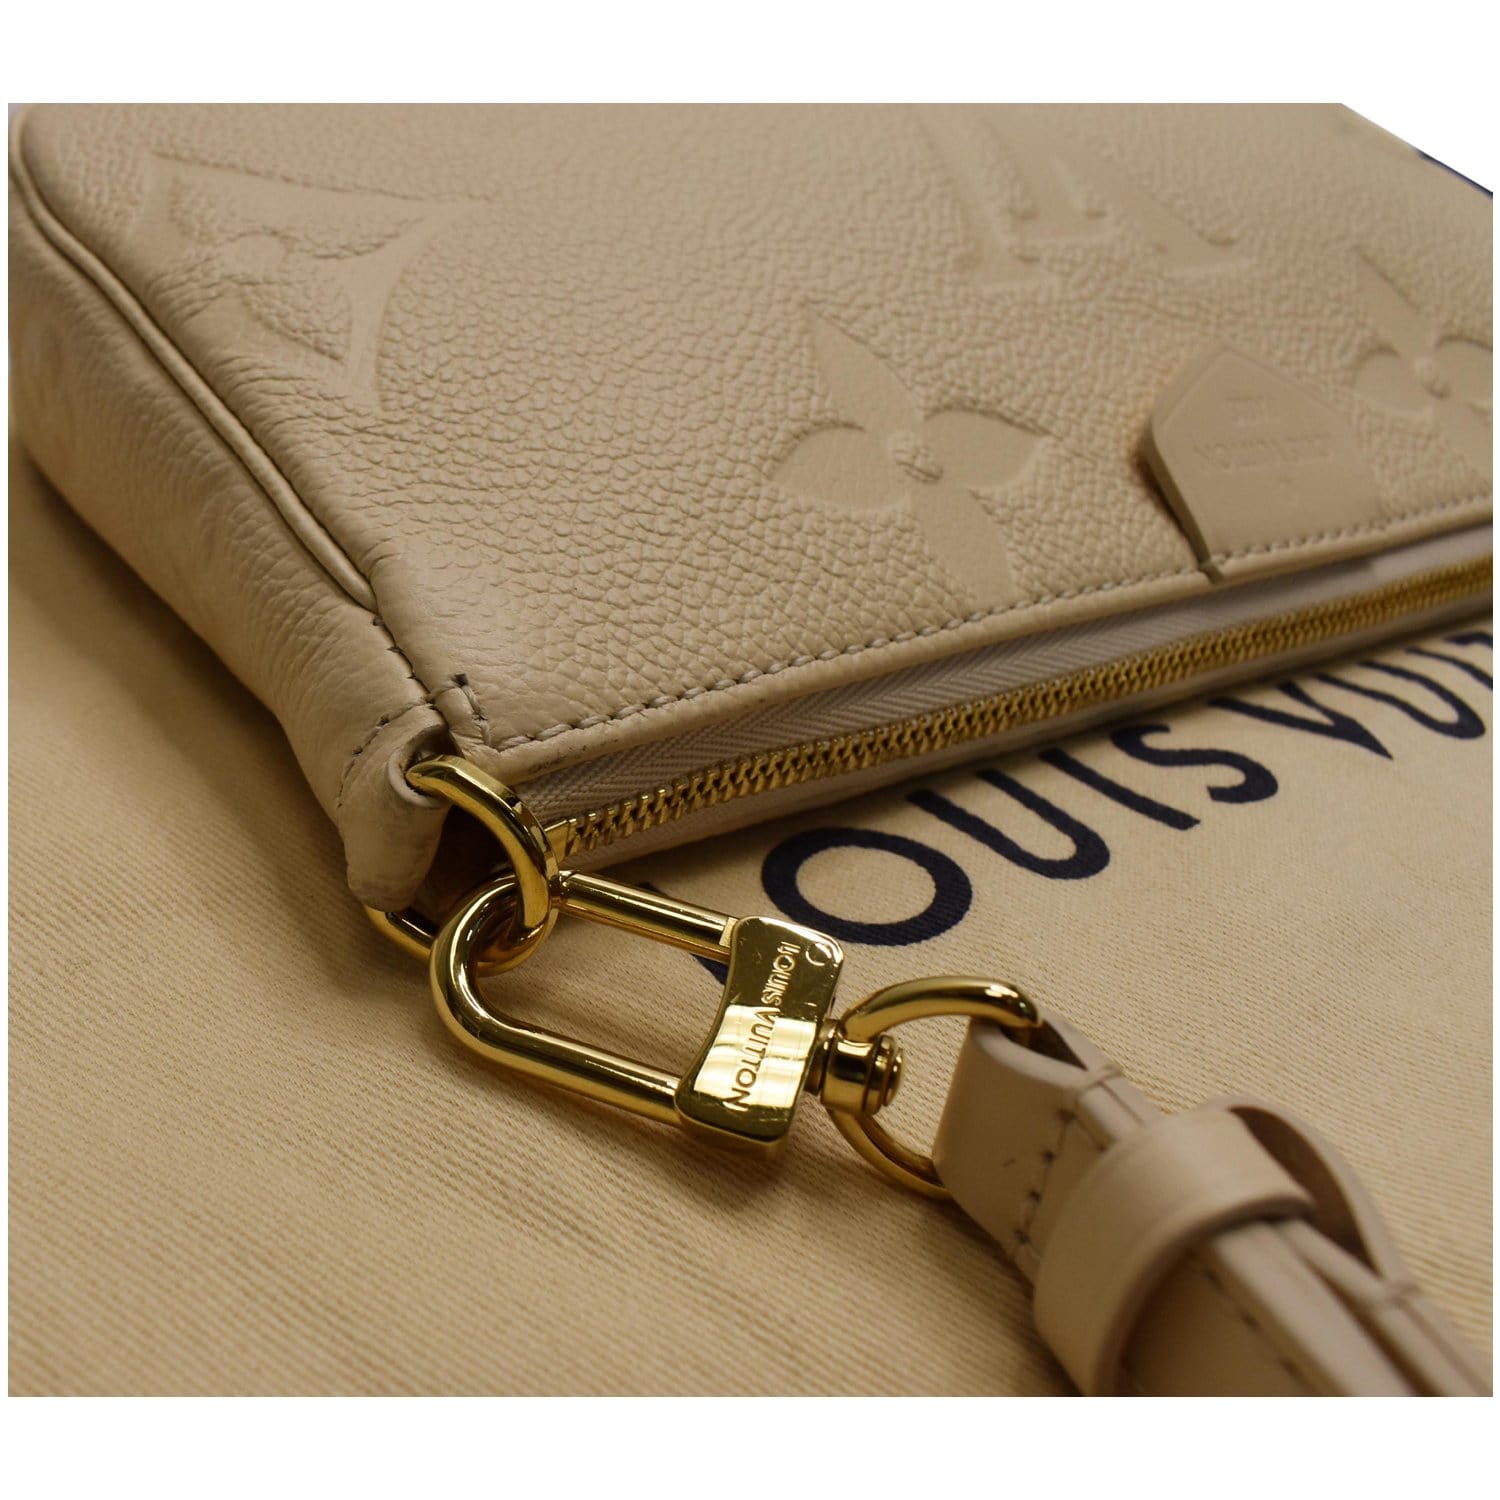 Louis Vuitton Multi Pochette Monogram Empreinte Beige